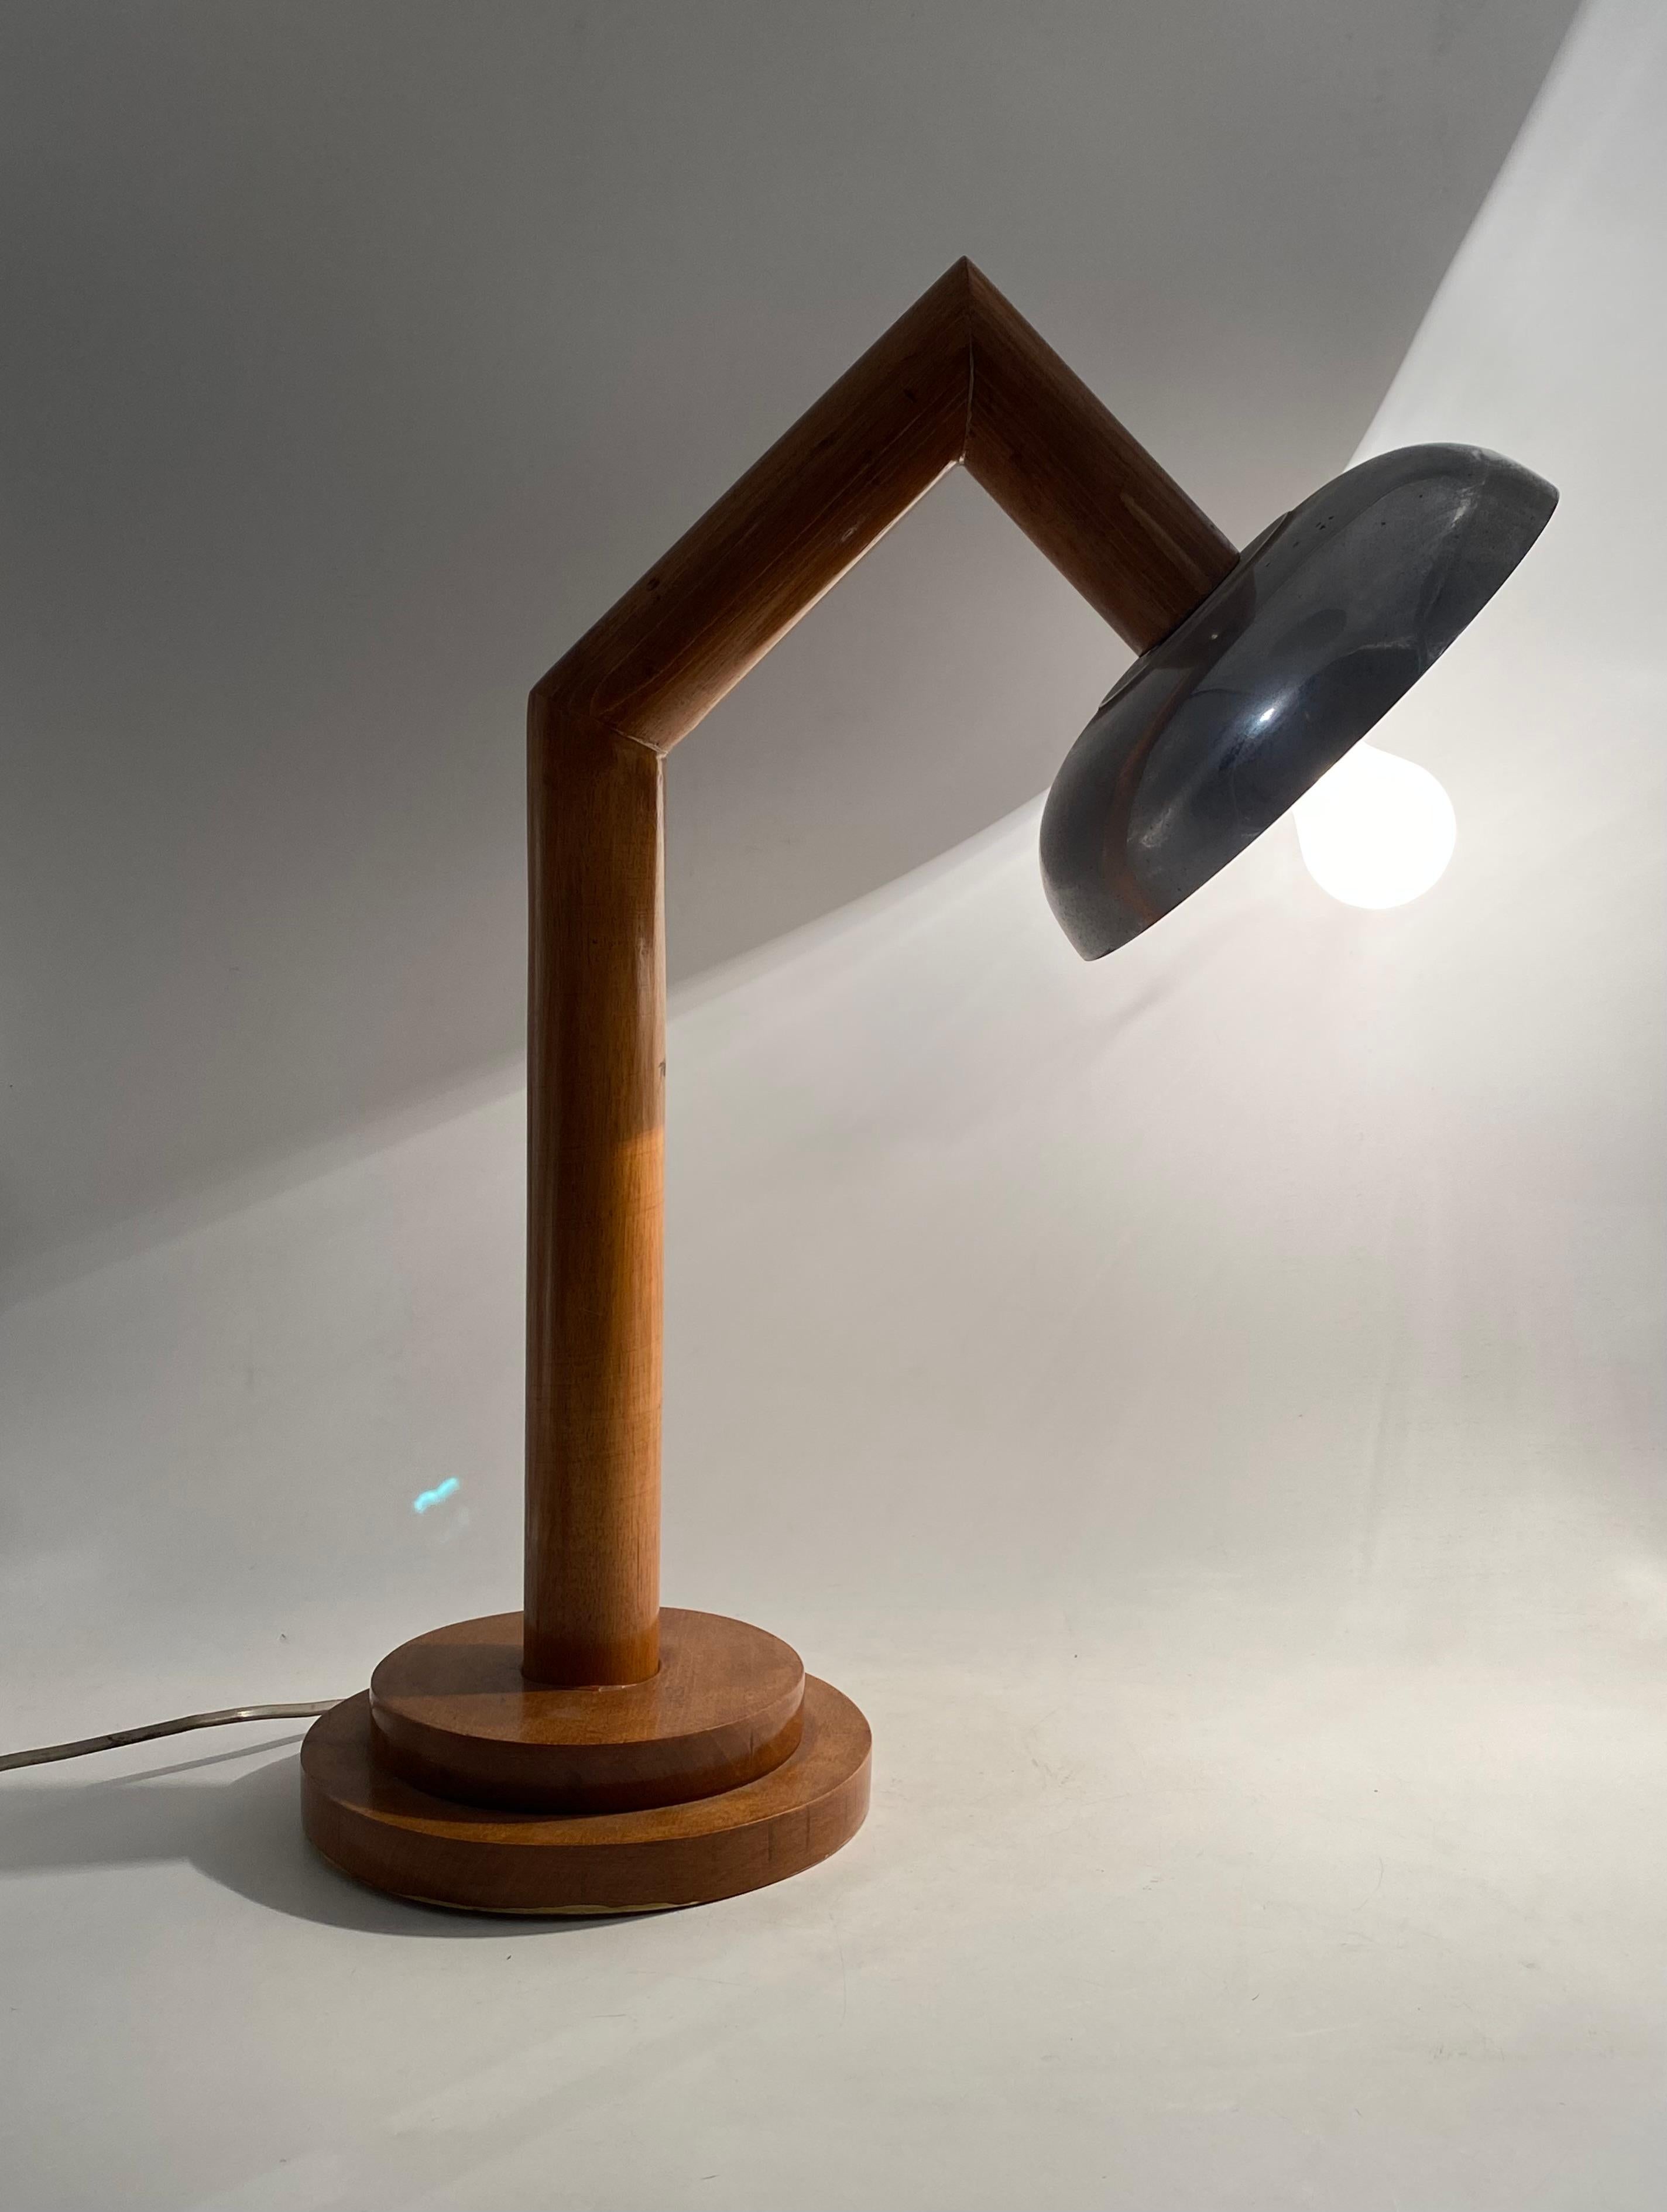 Lampe de table moderne en bois

France vers les années 1940

aluminium, bois

H 57 cm - 44 x 24 cm

État : excellent, conforme à l'âge et à l'utilisation